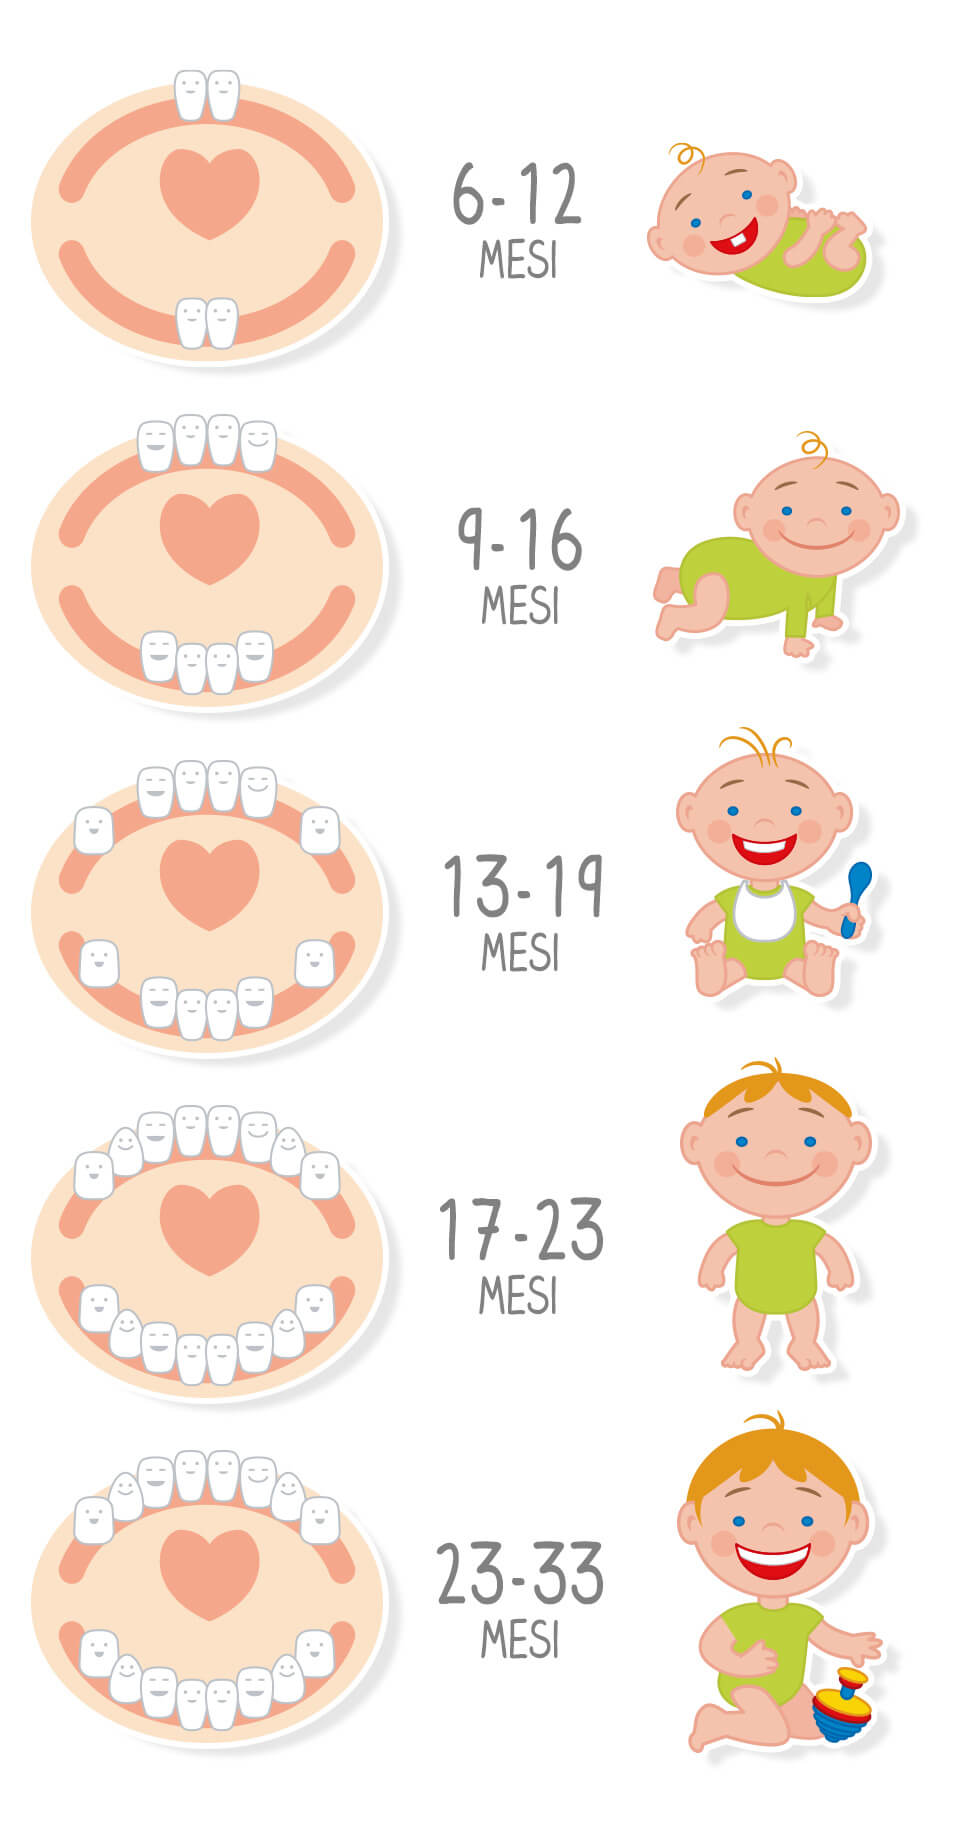 Crescita dentini nei primi 33 mesi